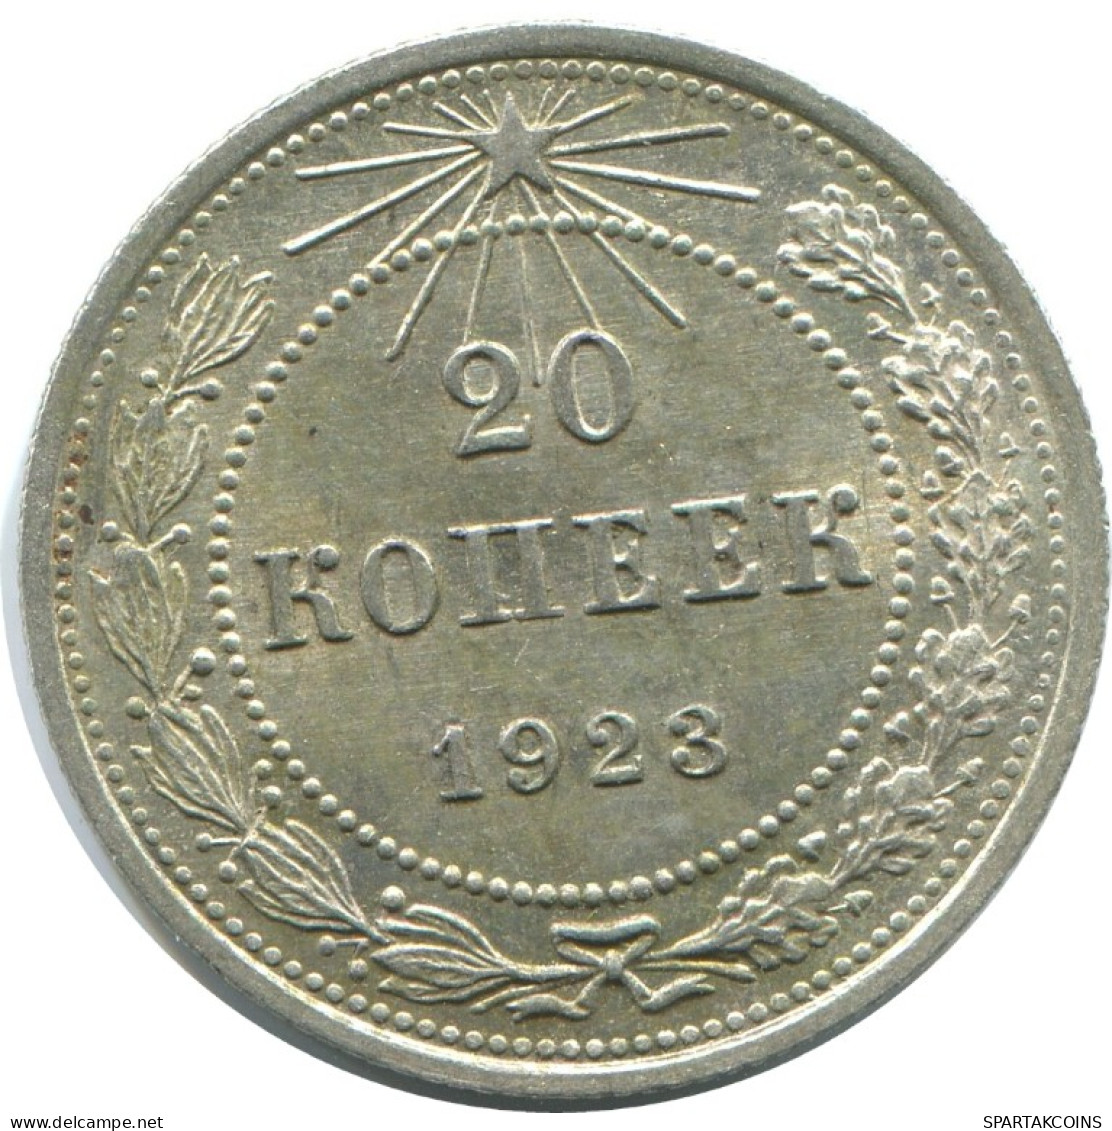 20 KOPEKS 1923 RUSSLAND RUSSIA RSFSR SILBER Münze HIGH GRADE #AF447.4.D.A - Russia